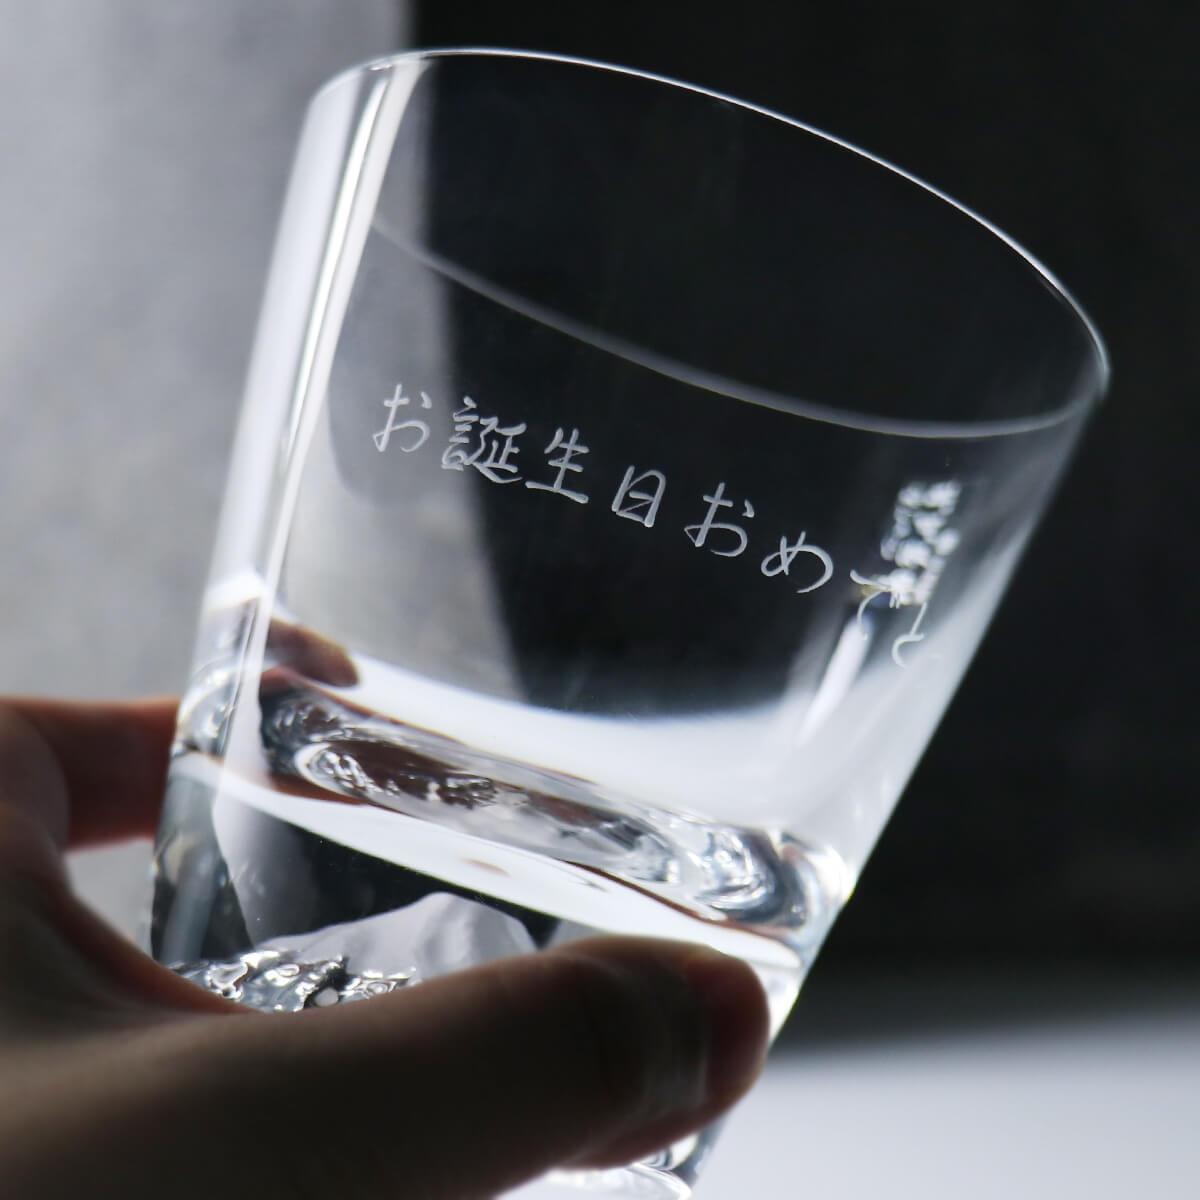 【日本江戶硝子】傳統工藝田島硝子富士山杯グラスの底に、富士山が。Fujiグラス (日本桐箱包裝) - MSA玻璃雕刻